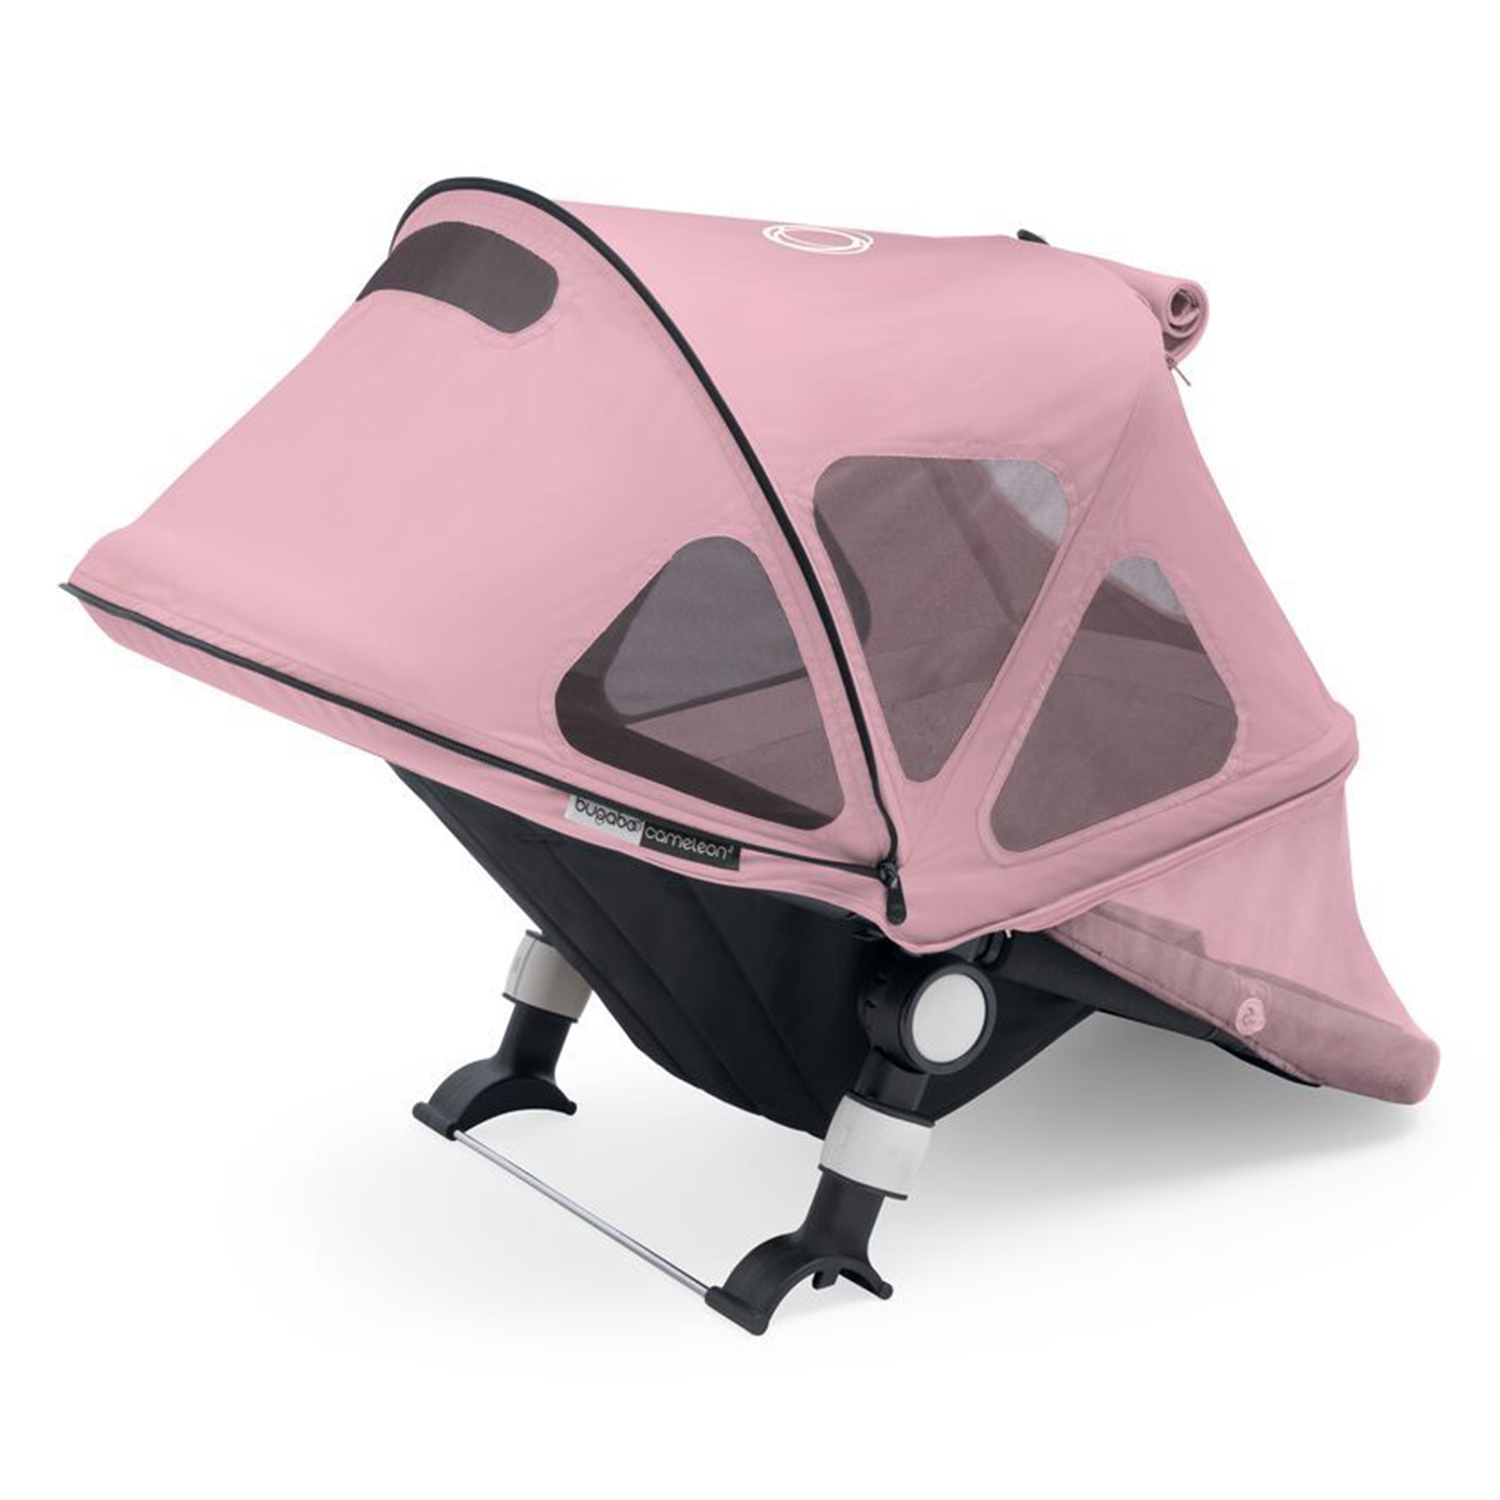 Капор от солнца для коляски Cameleon3/Fox/Fox2 breezy Soft Pink Bugaboo, цвет нет цвета Капор от солнца для коляски Cameleon3/Fox/Fox2 breezy Soft Pink Bugaboo - фото 1